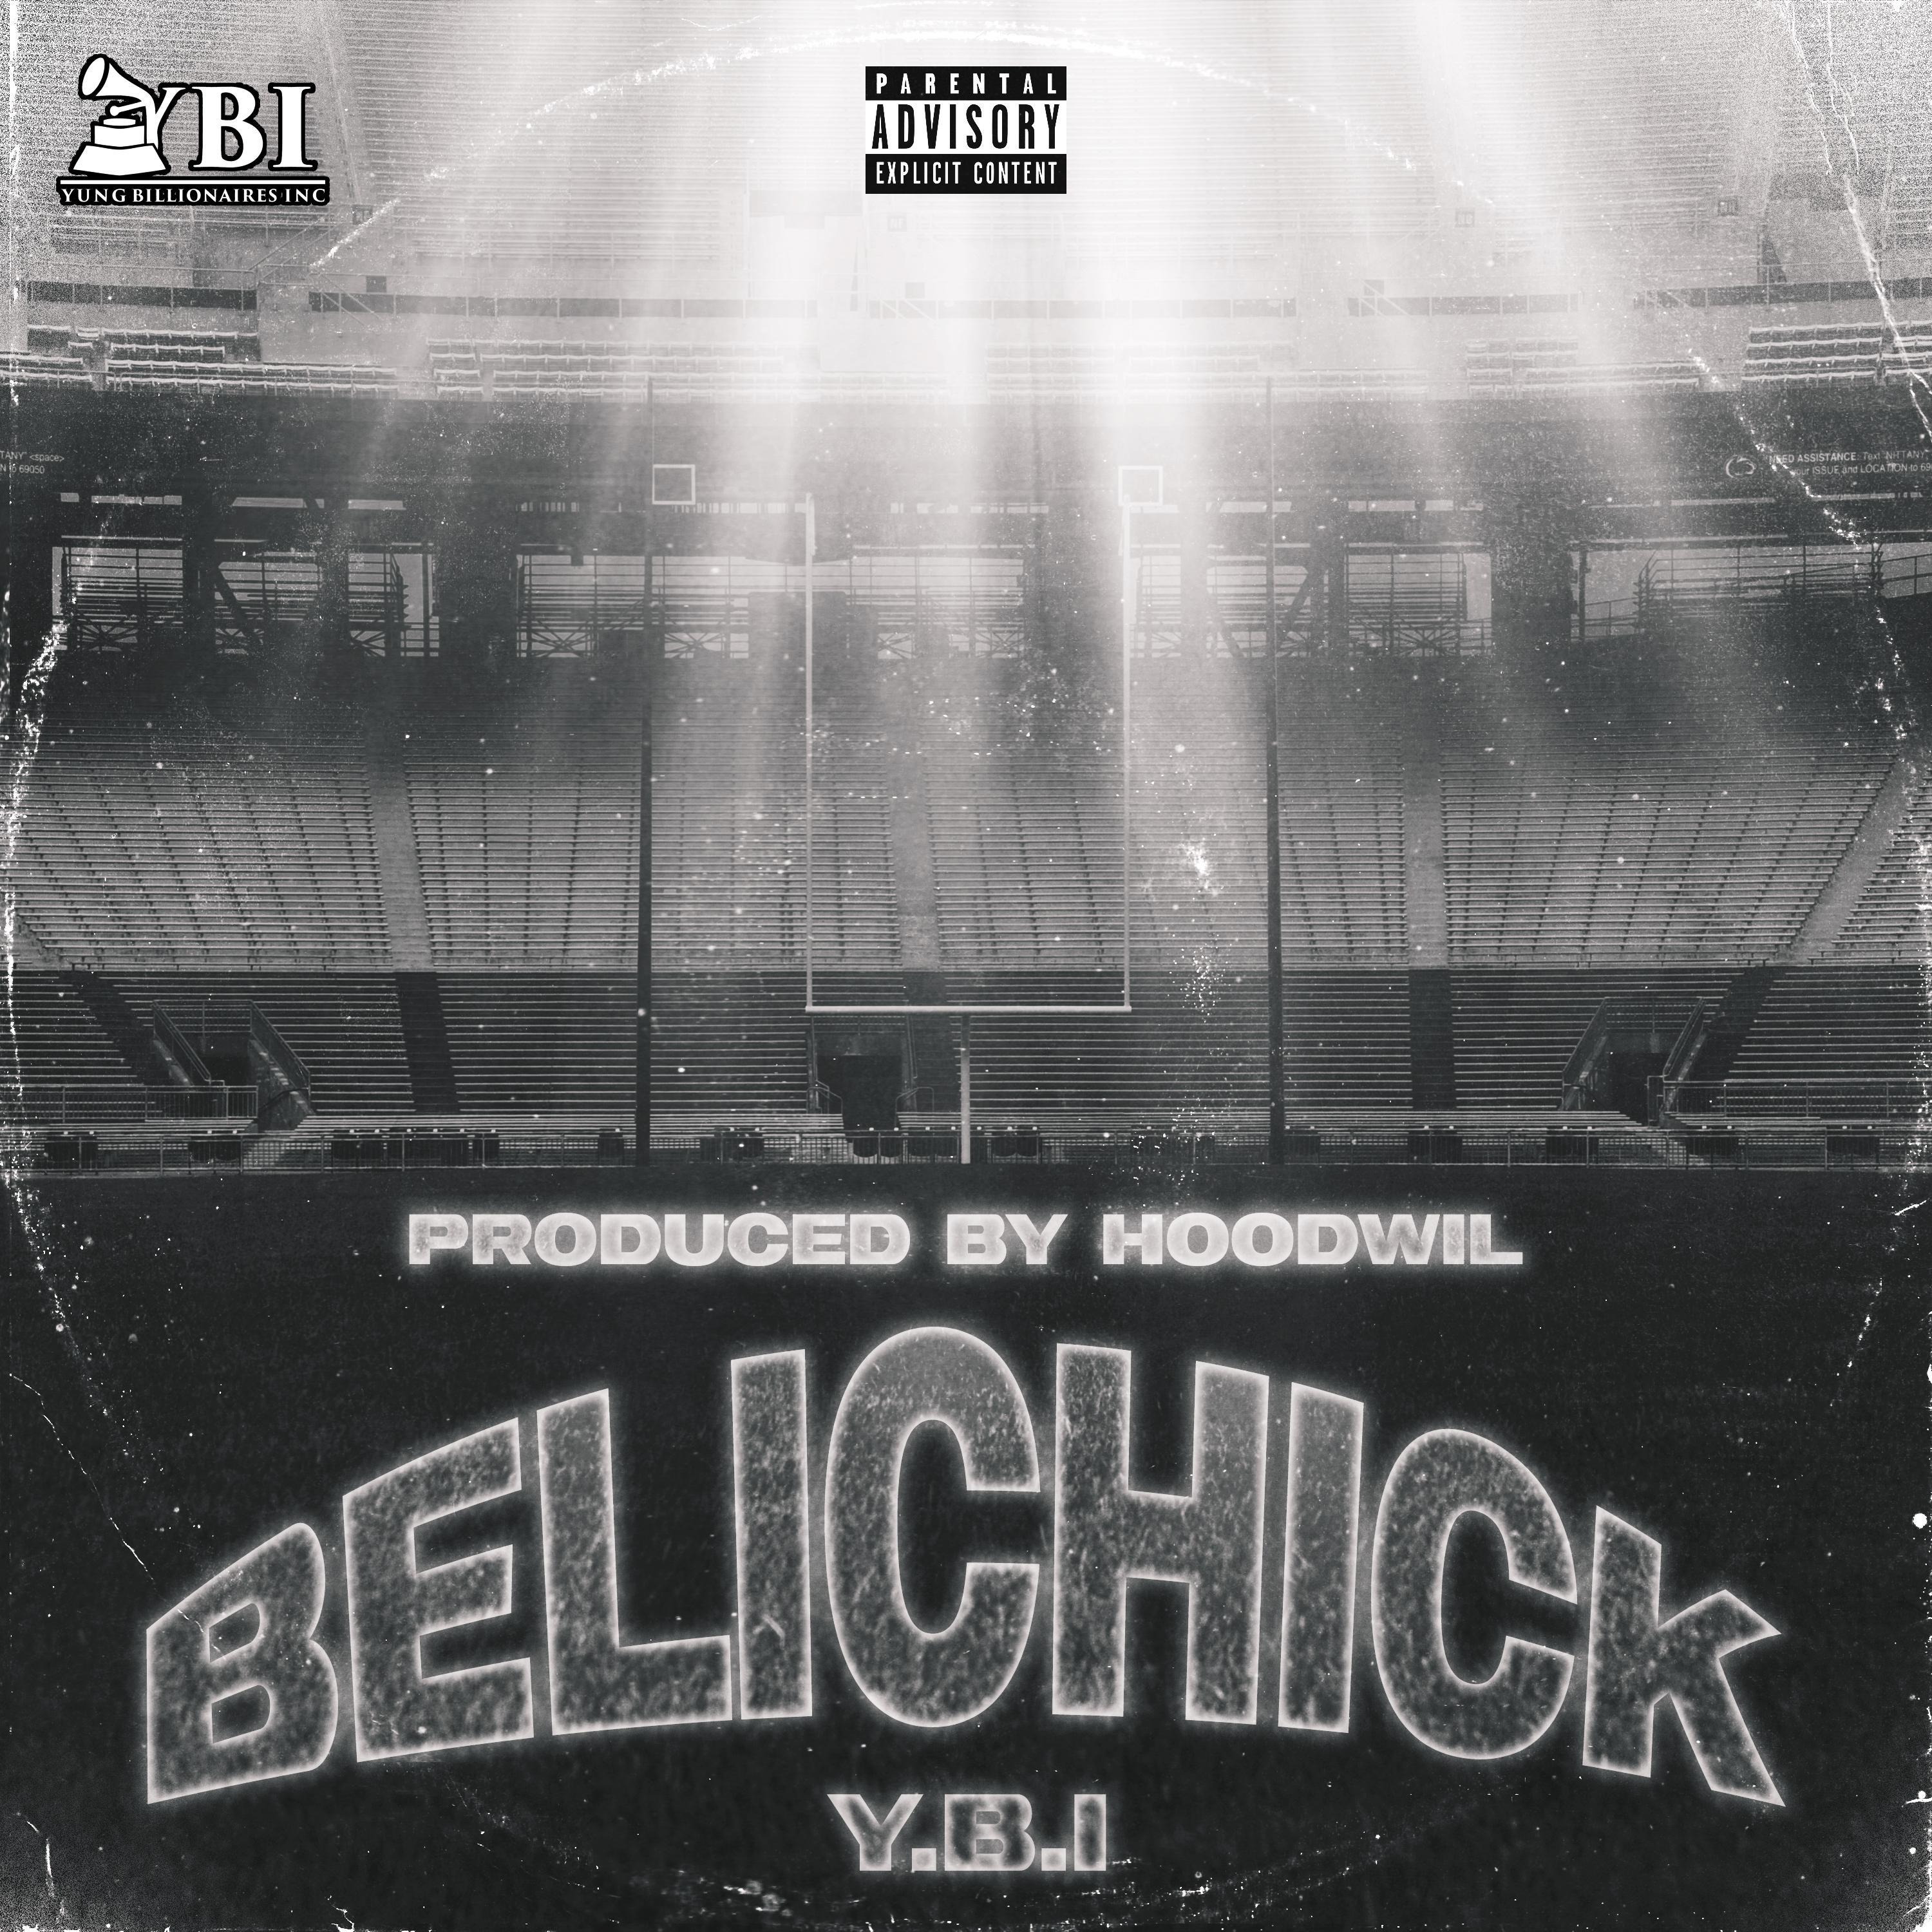 Y.B.I - Belichick (feat. CEO VICIOU$ & Don Fresh)